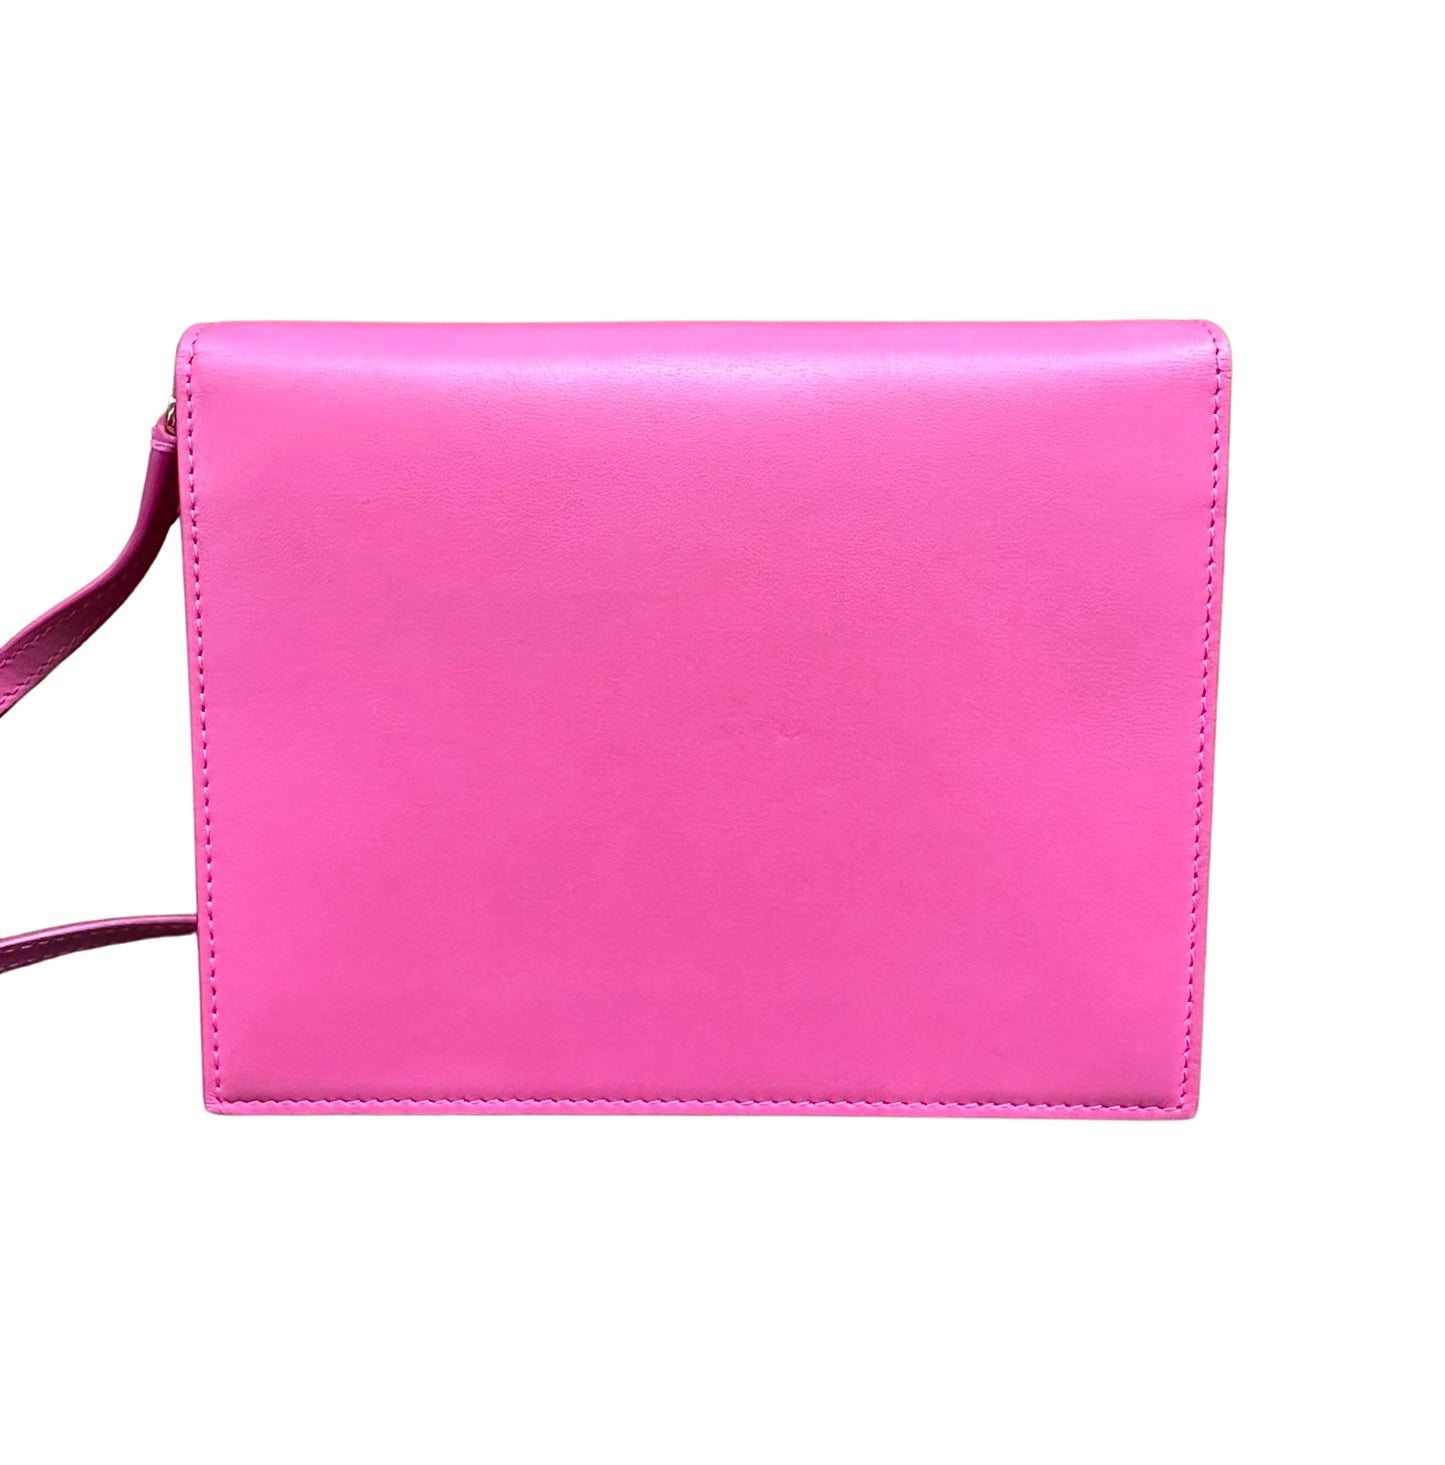 Back of pink bag